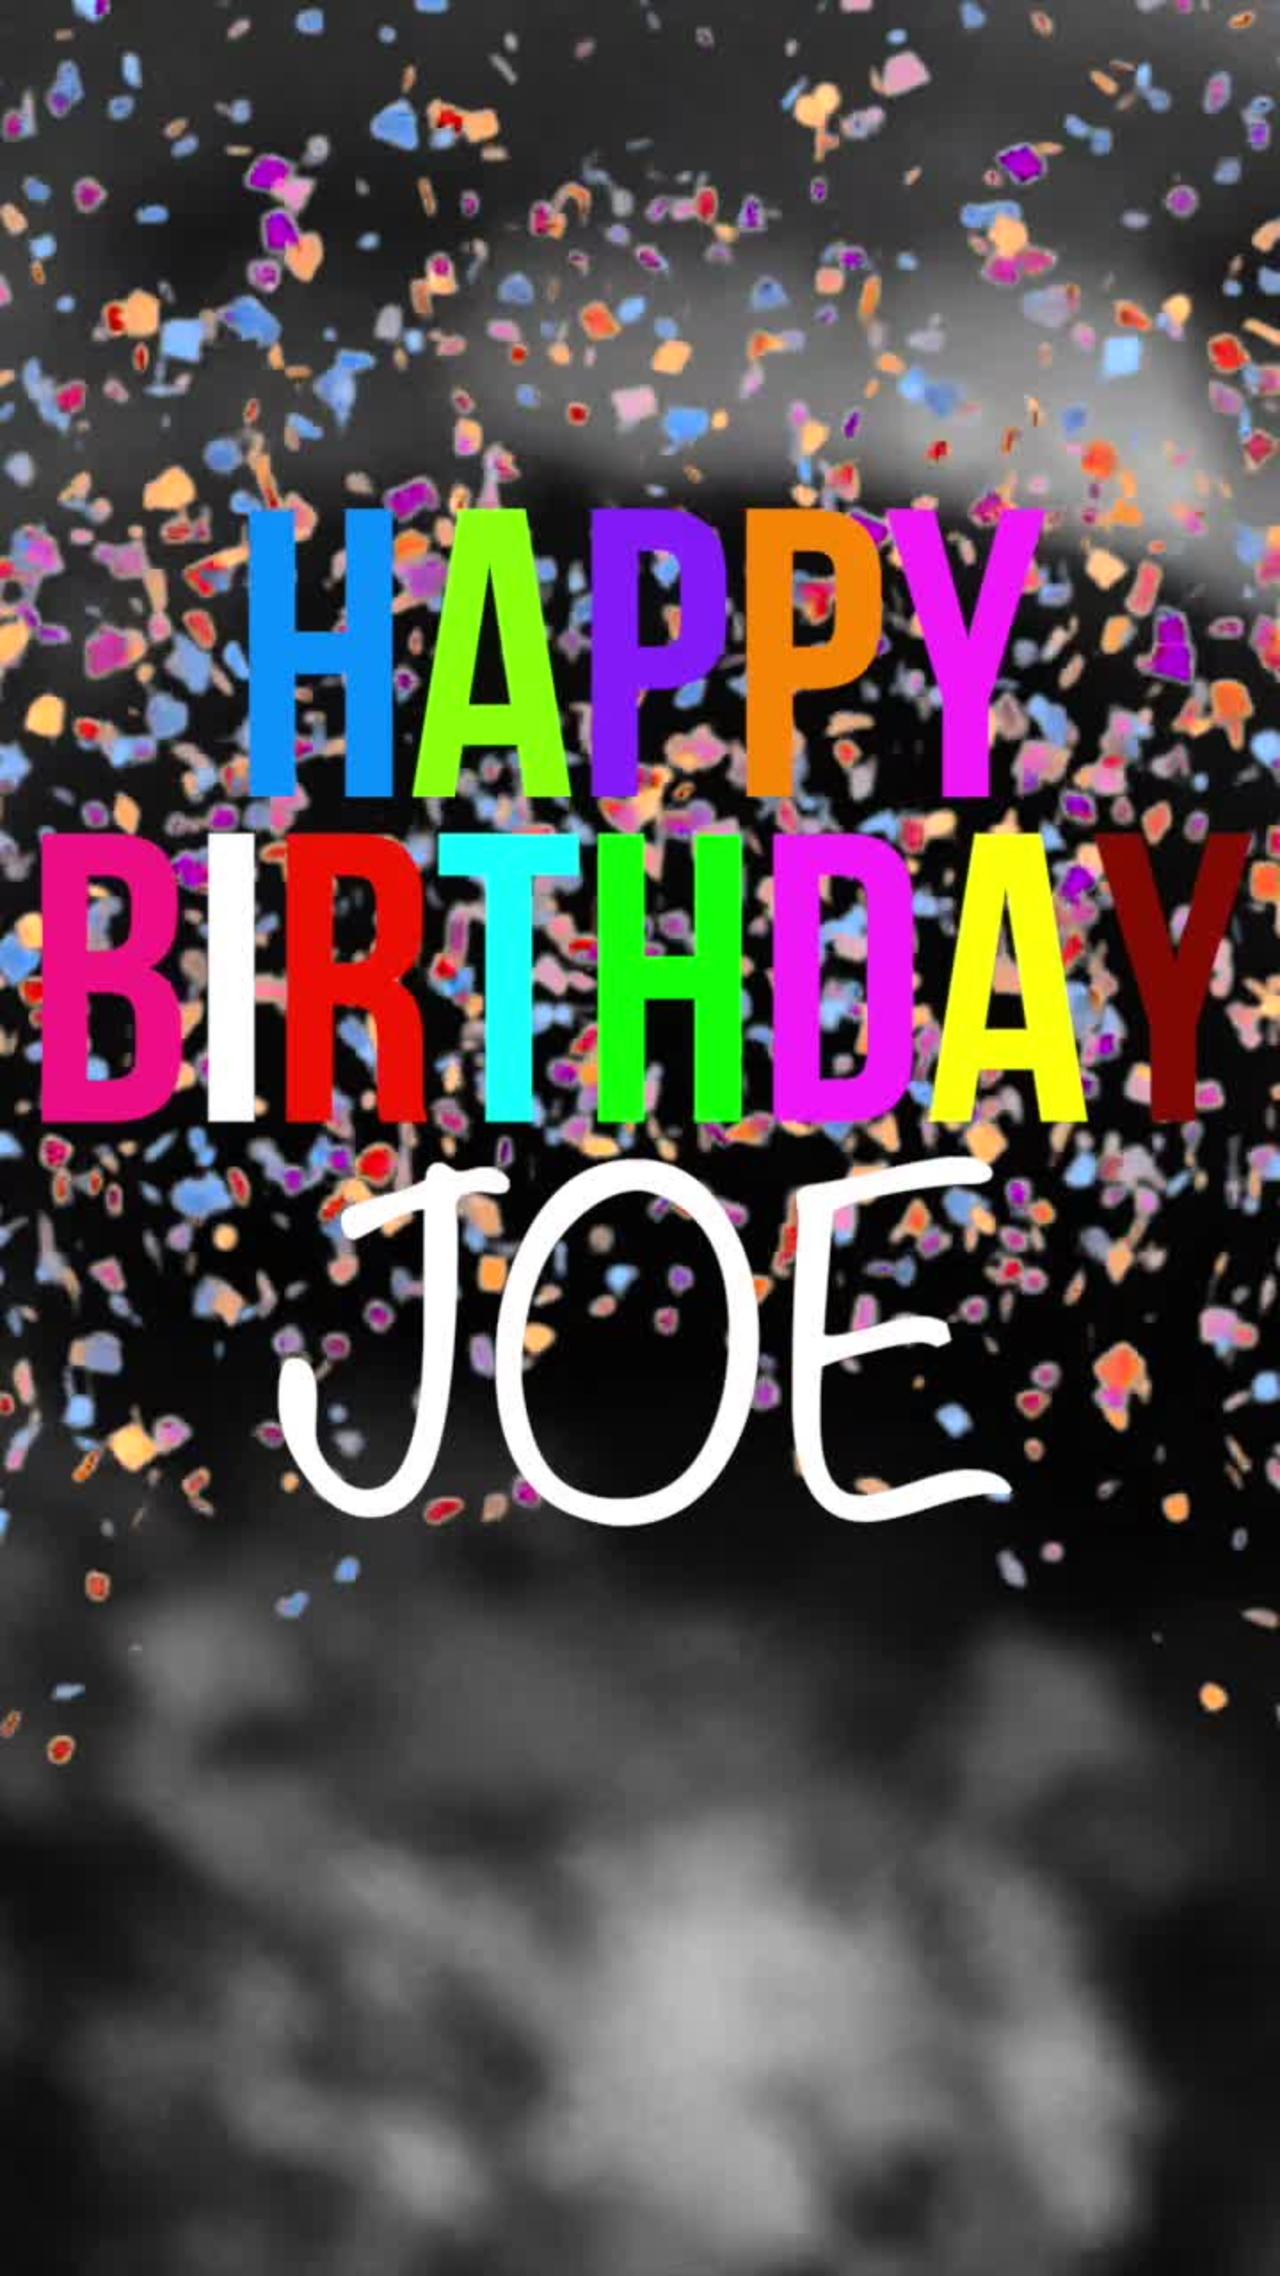 Happy Birthday Joe!